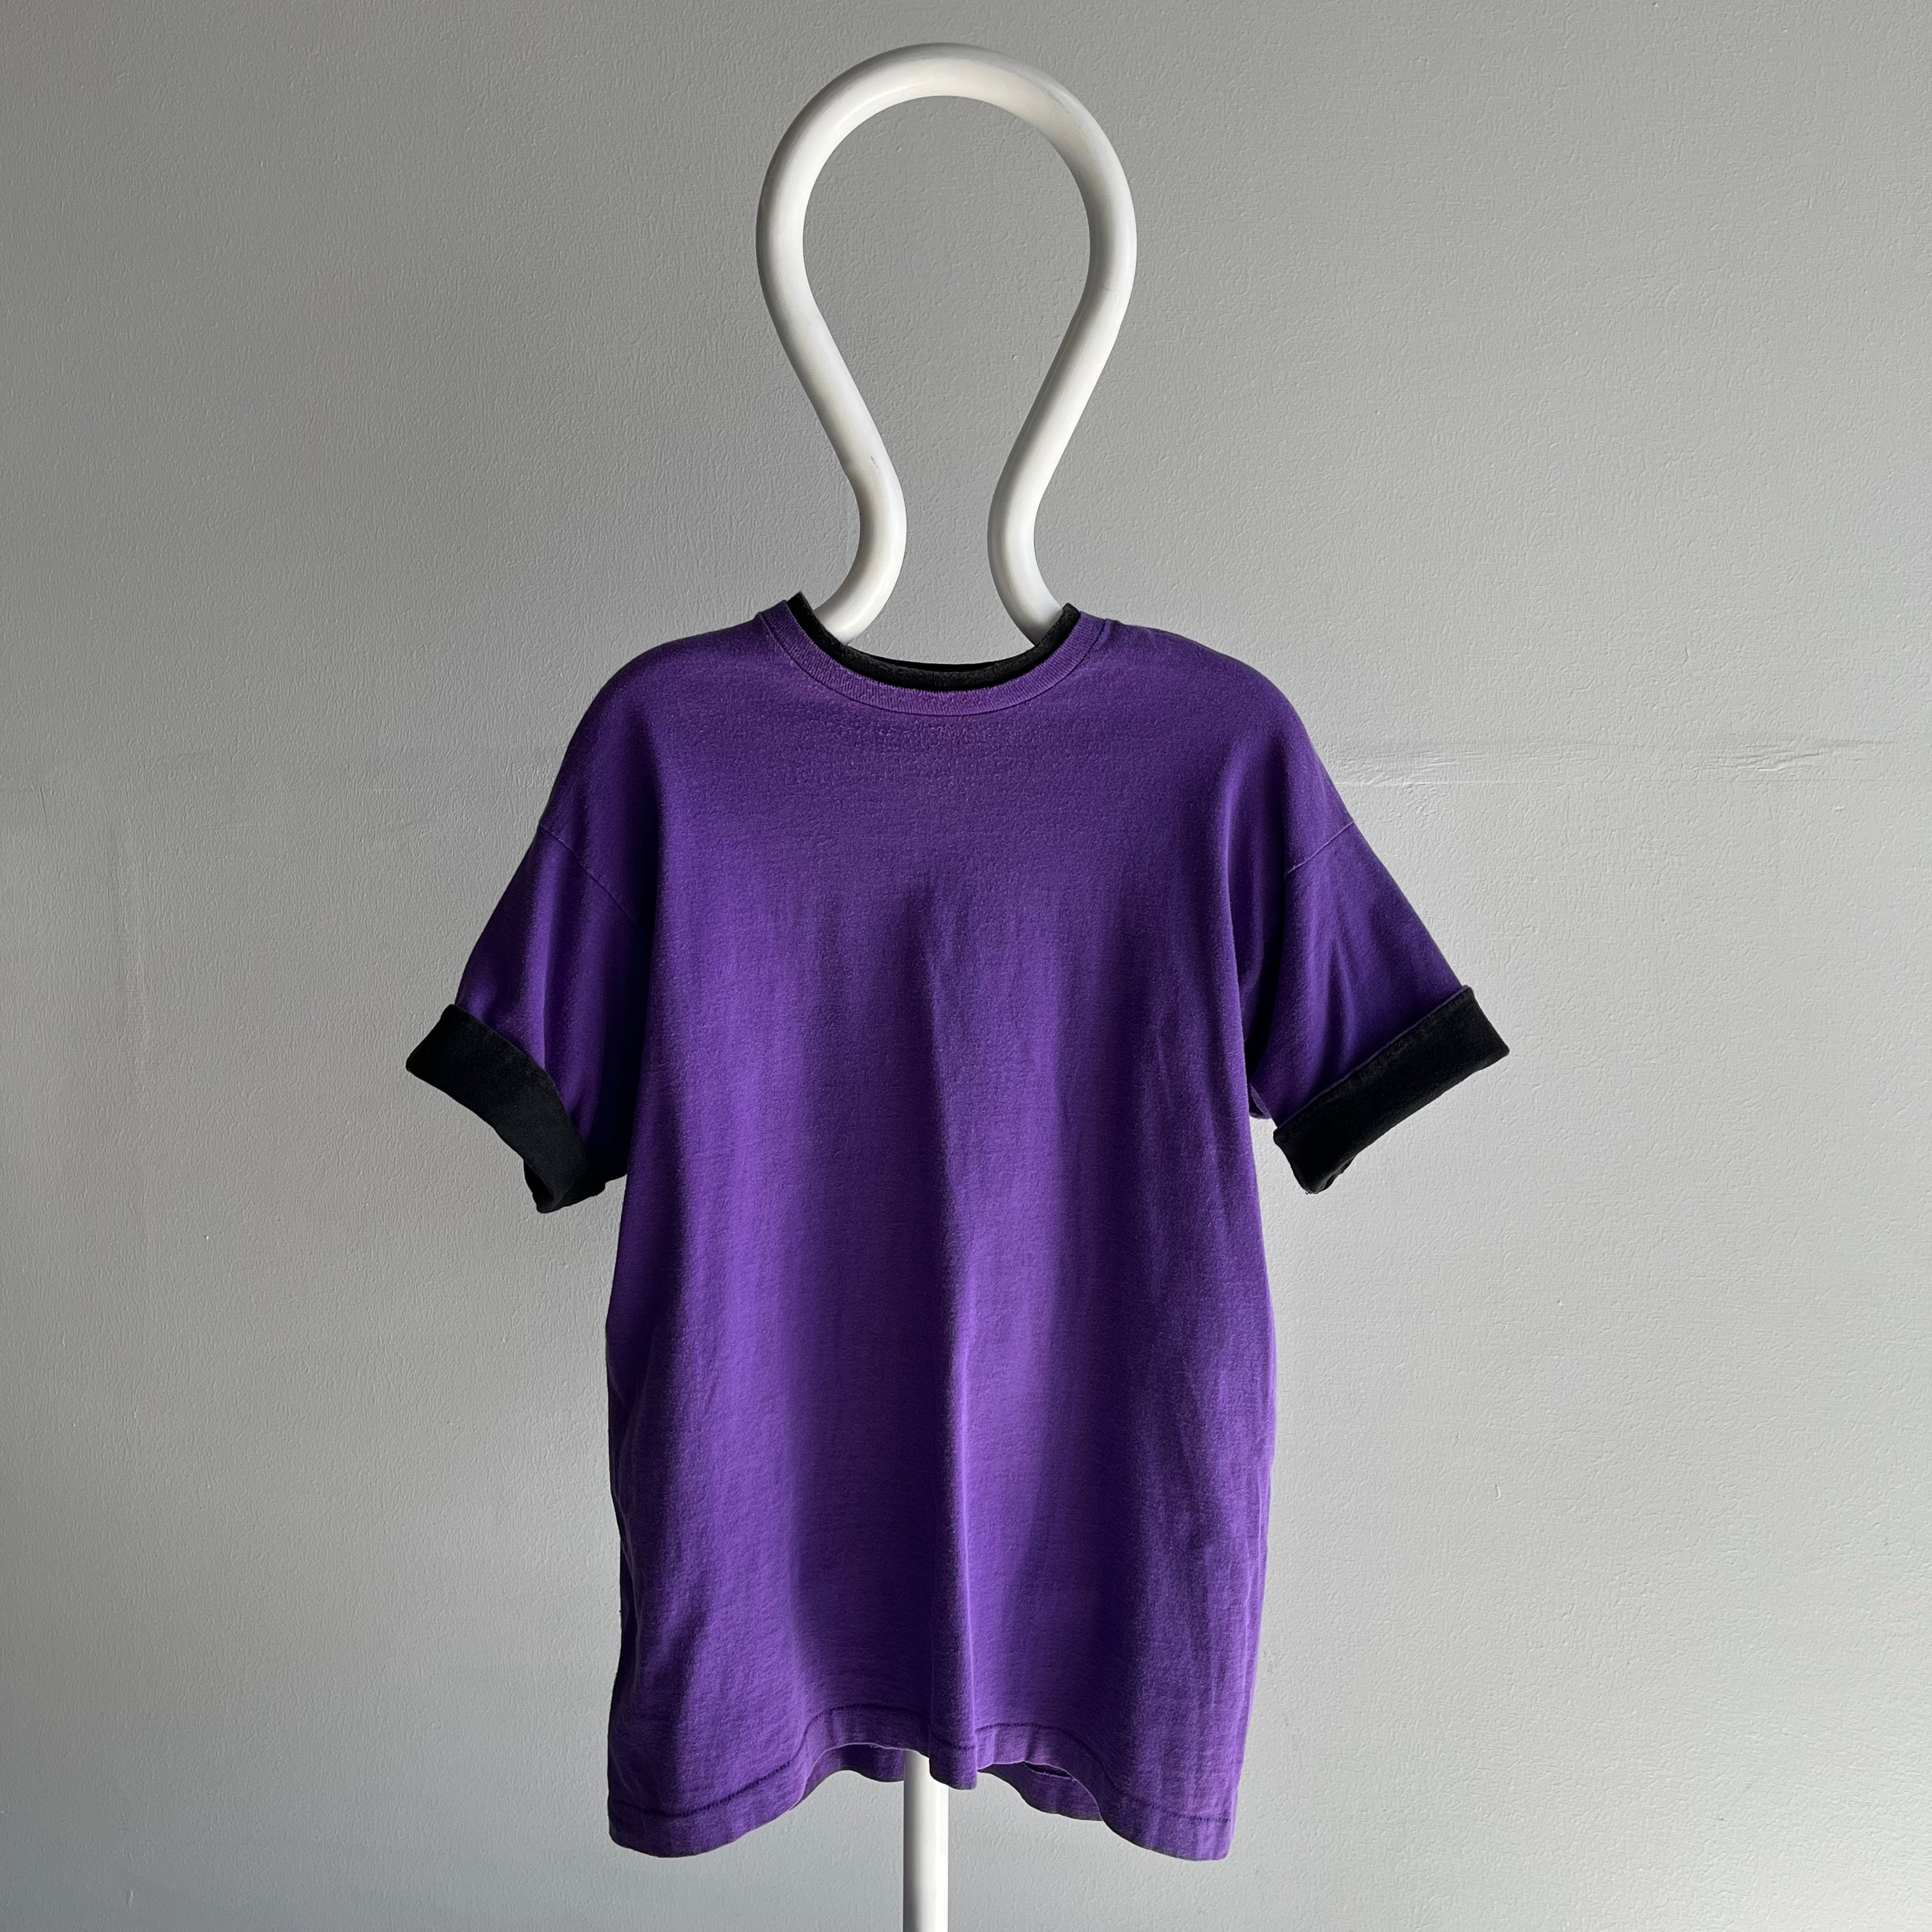 T-shirt bicolore violet et noir des années 1980/90